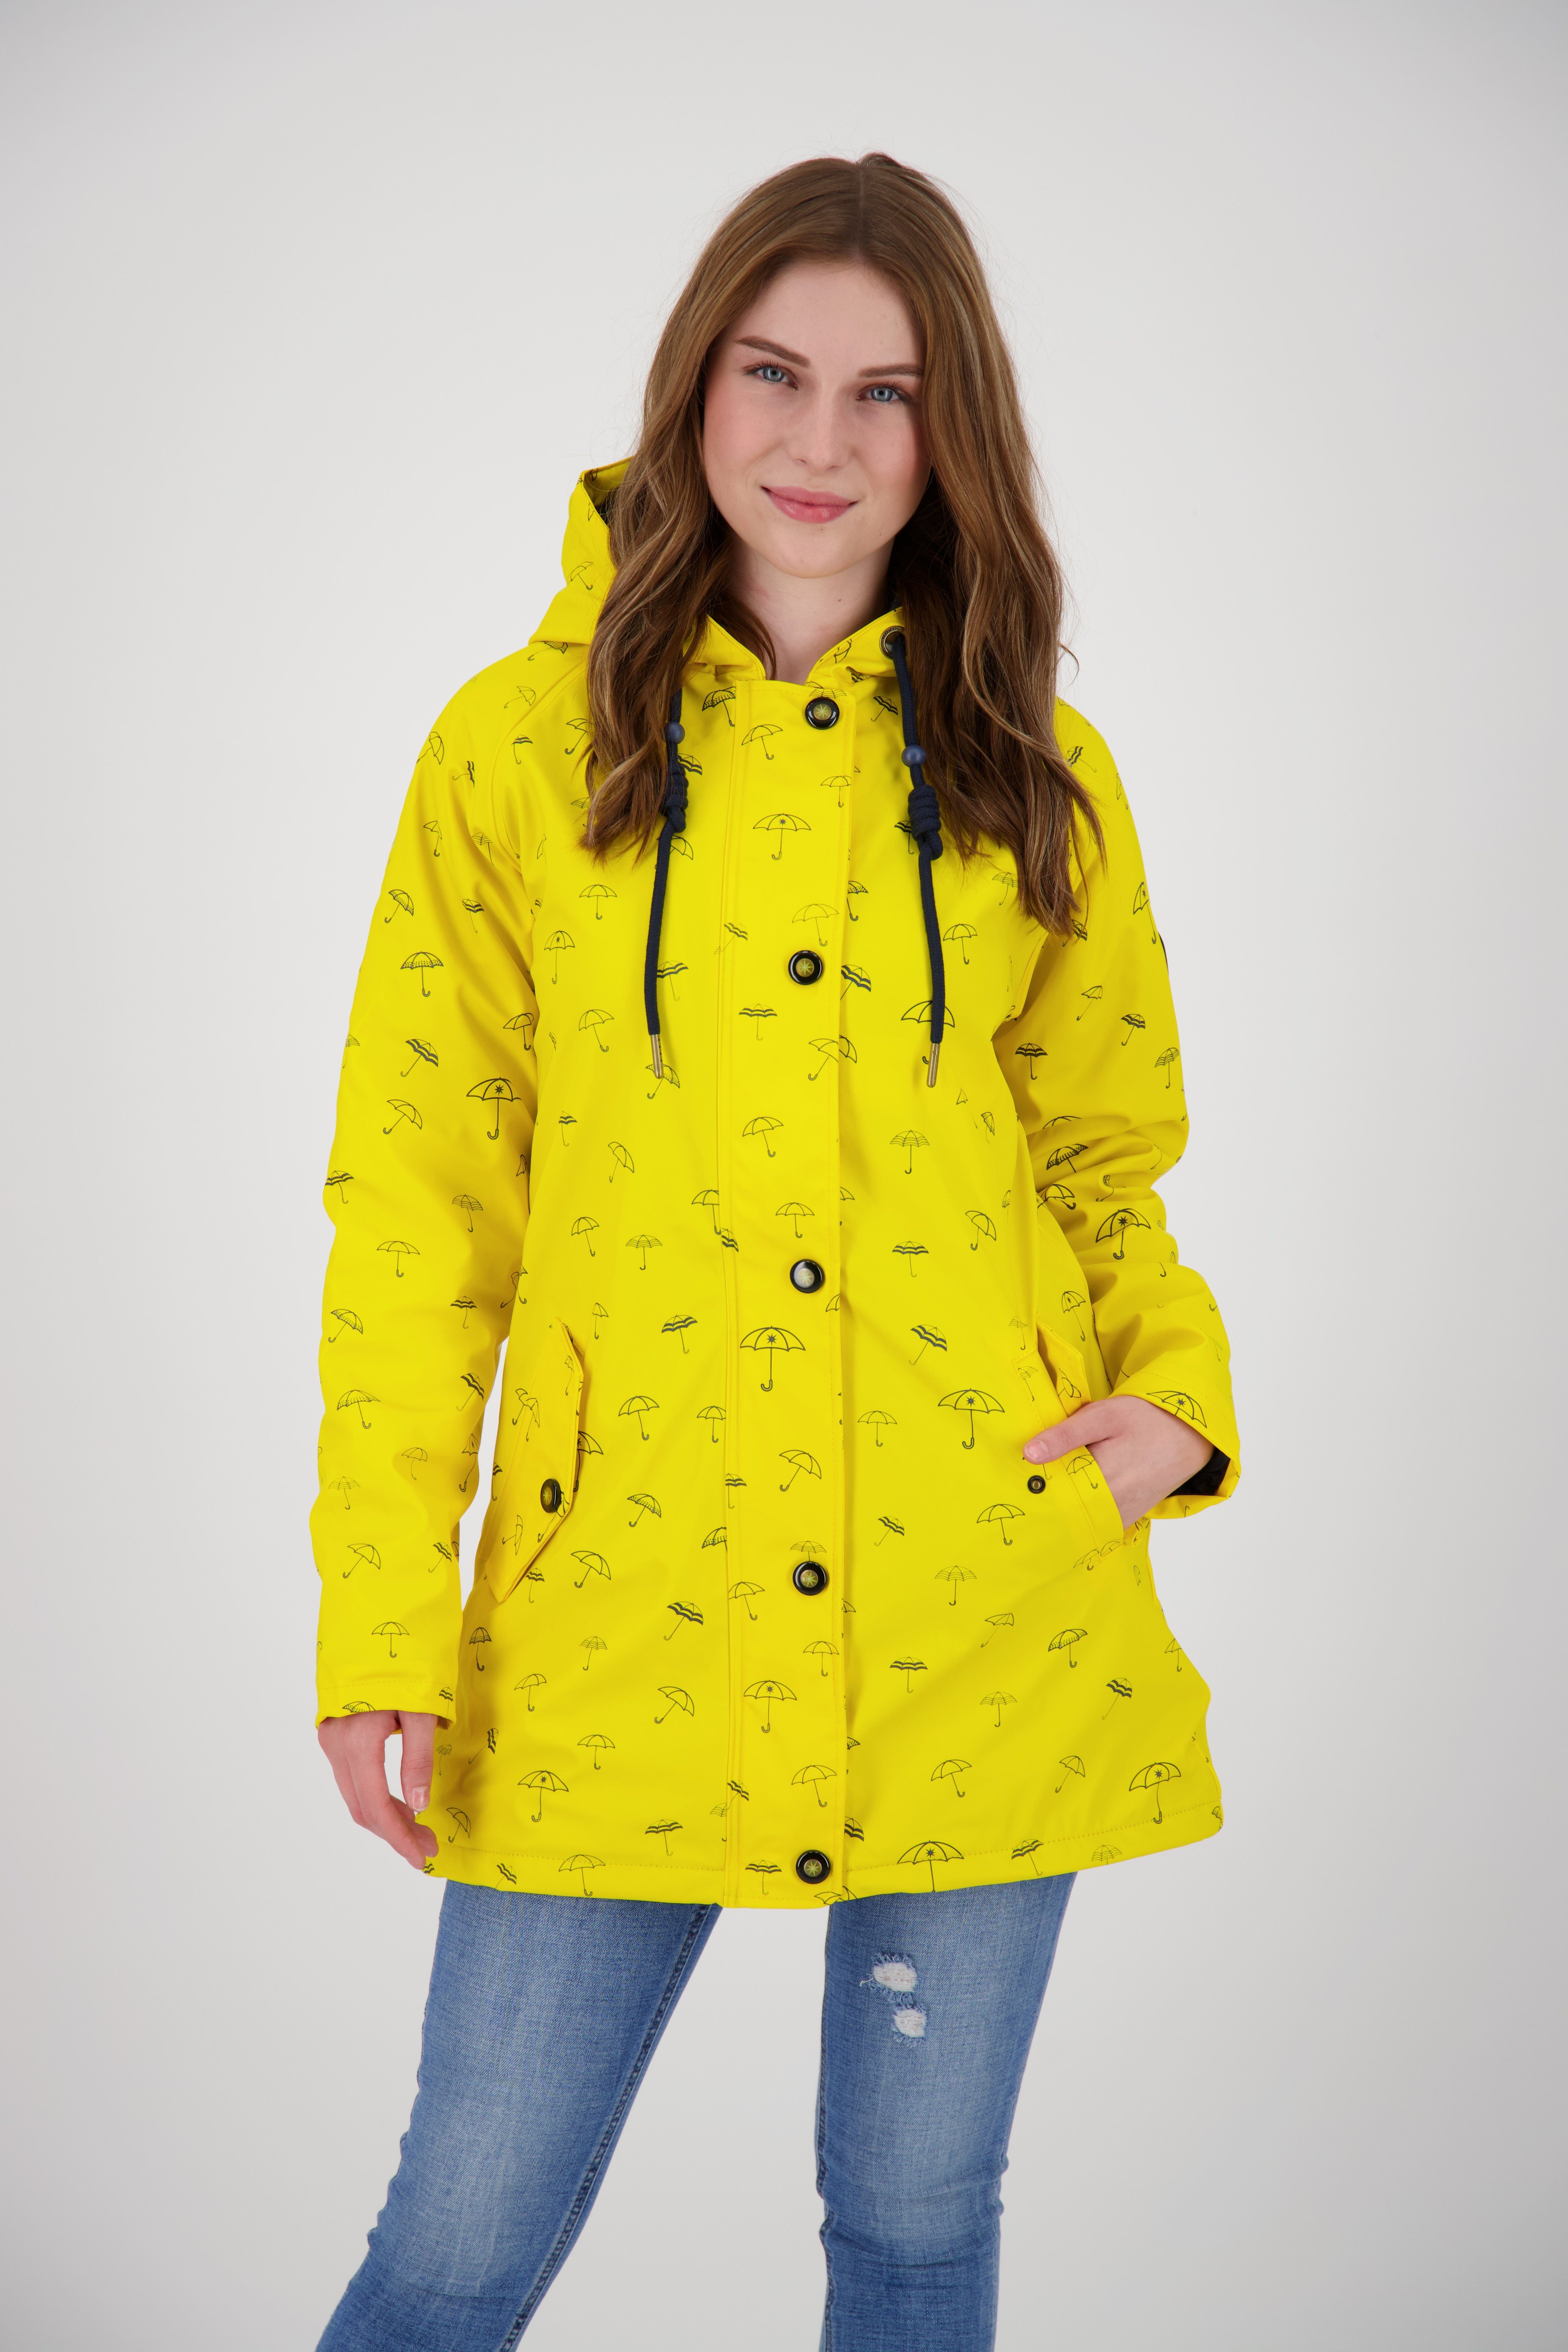 DEPROC Active Regenjacke Friesennerz #ankerglutmeer yellow auch Großen erhältlich in Größen sun CS WOMEN